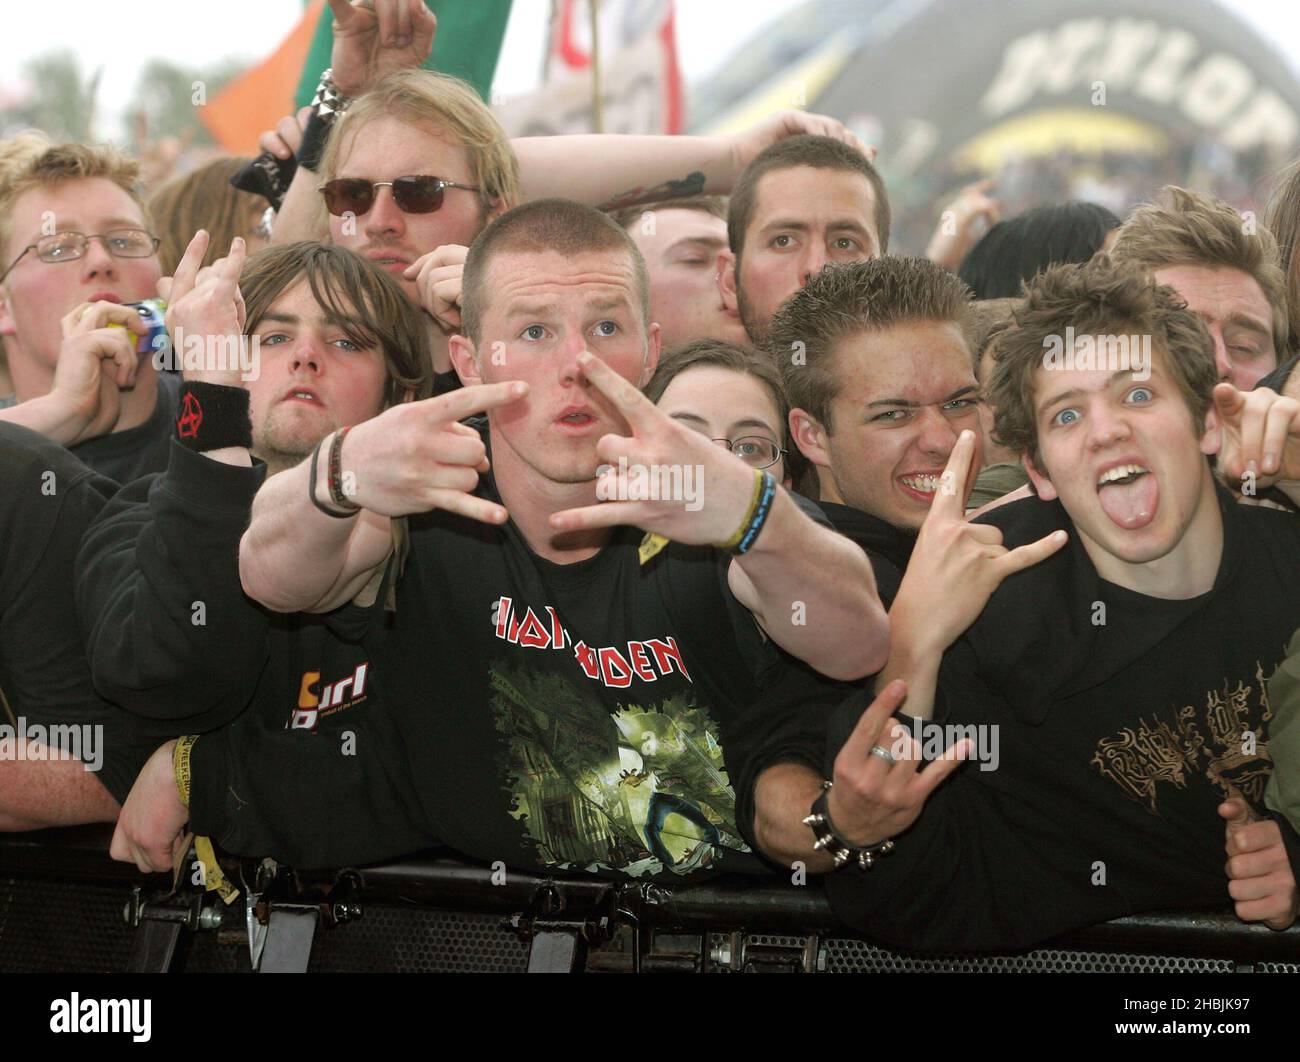 Les fans de Metal Rock devant la scène le troisième et dernier jour du Download Festival de cette année à Donington Park, Castle Donington, le 12 juin 2005 à Leicestershire, Angleterre. Banque D'Images